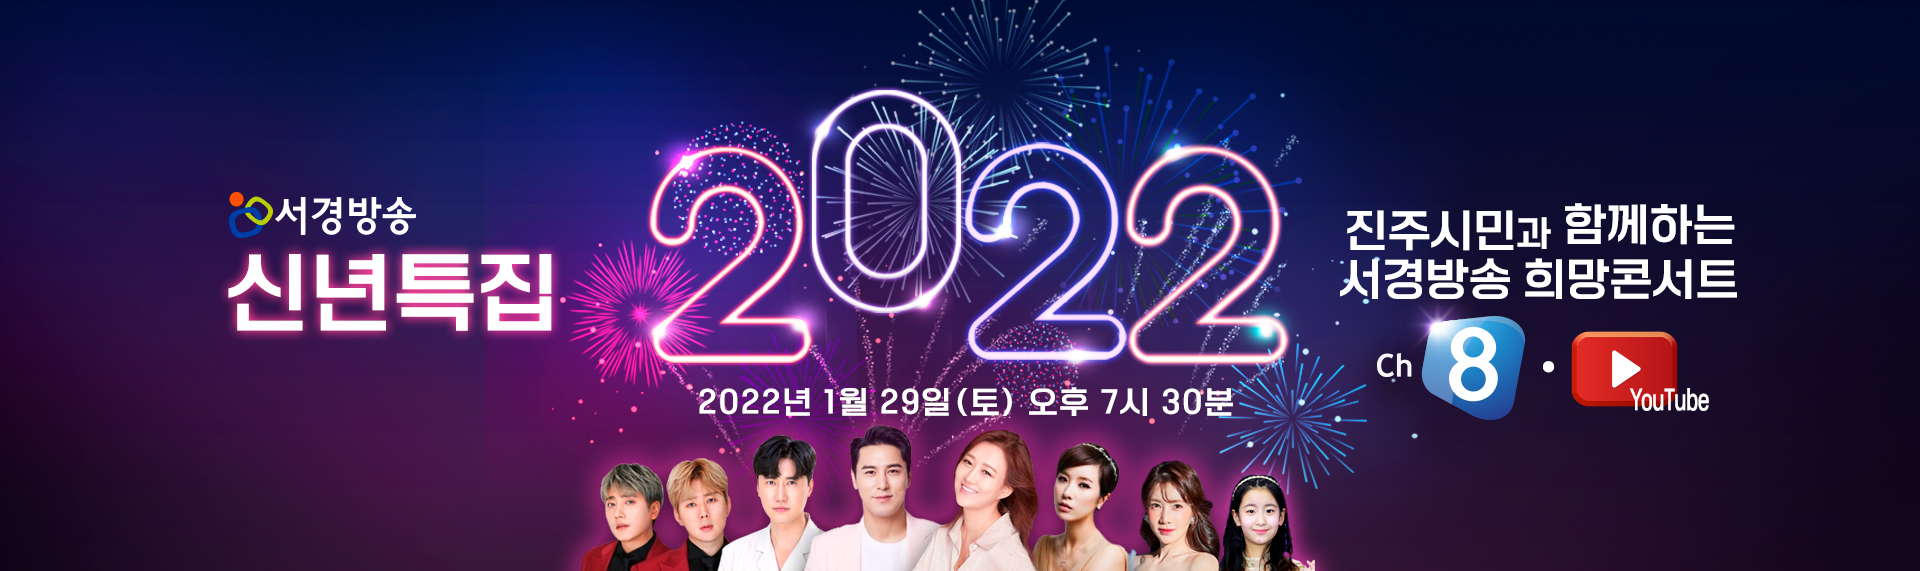 2022 서경방송 희망콘서트